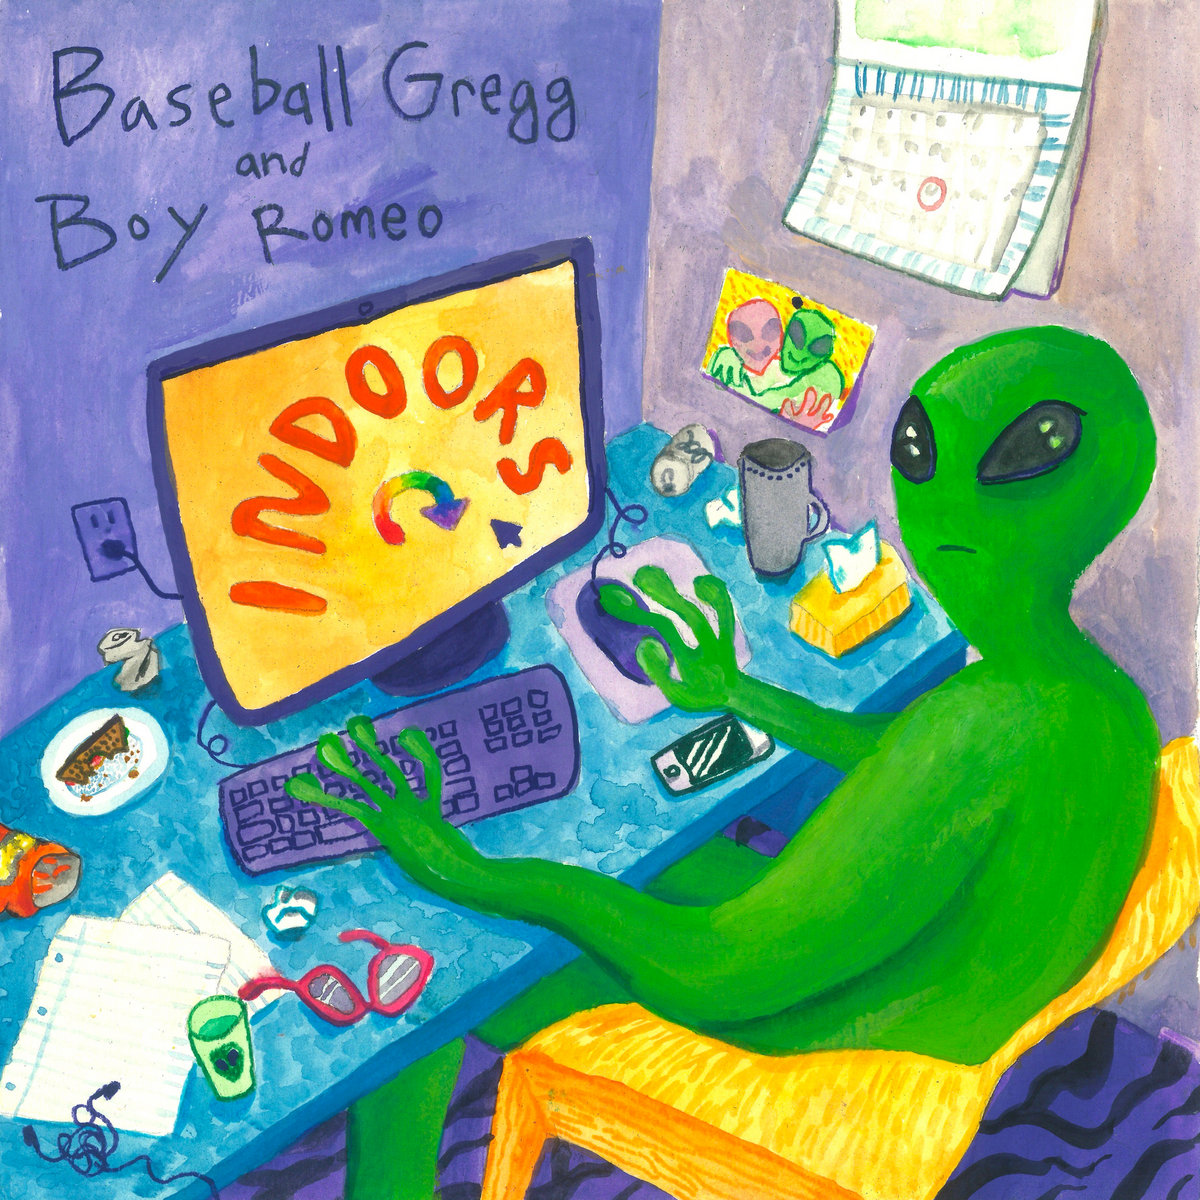 Un EP dei Baseball Gregg insieme a Boy Romeo in uscita tra pochi giorni